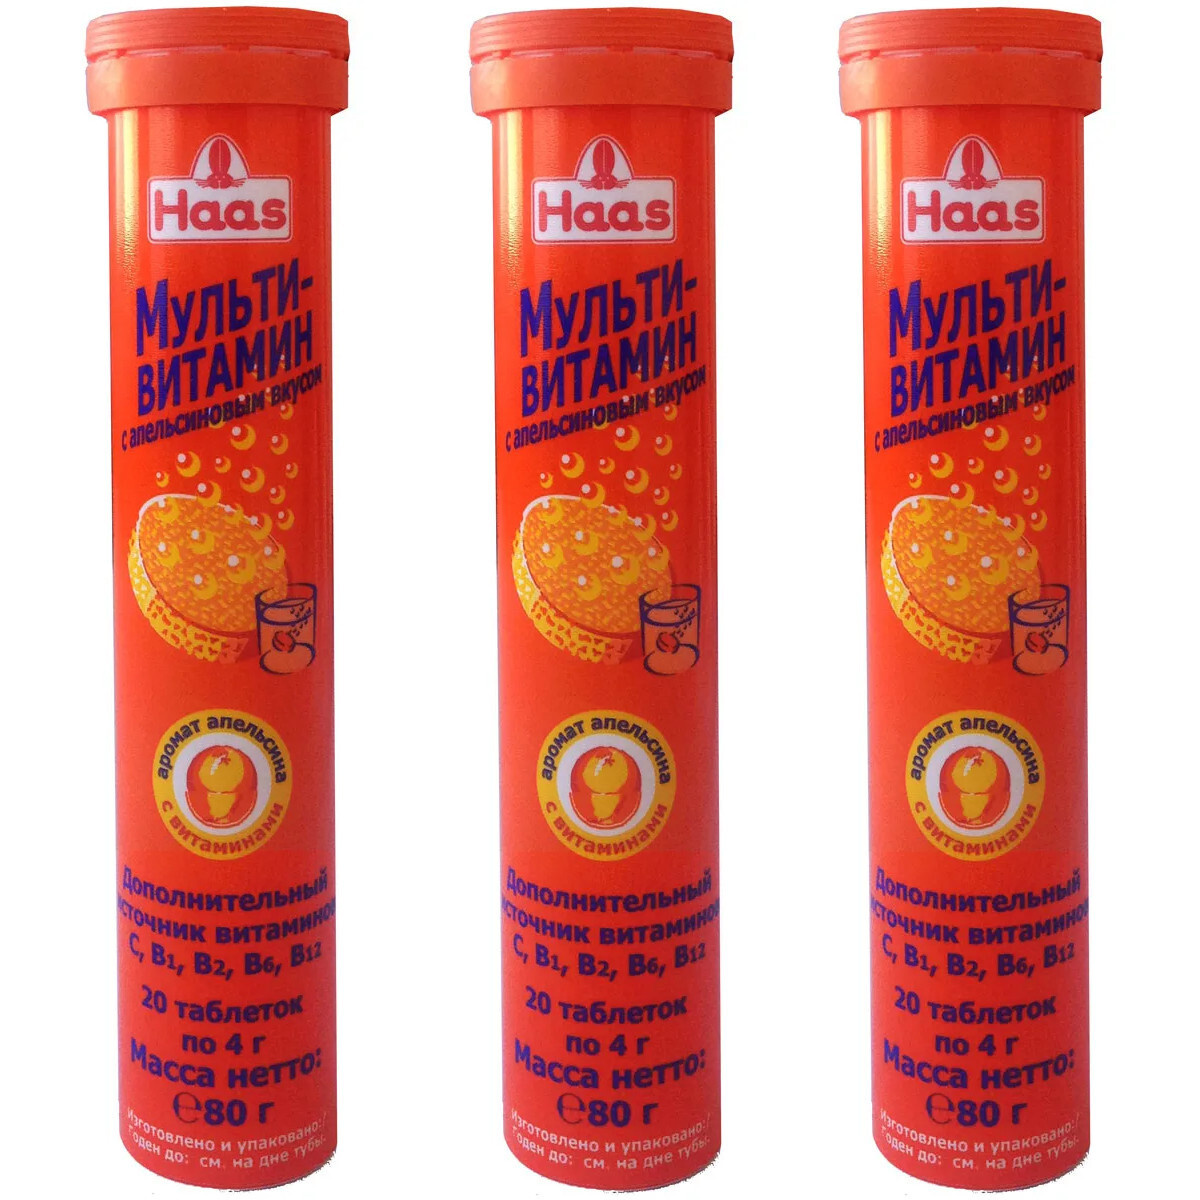 Шипучий витамин с польза. Мультивитамин с апельсиновым вкусом 20 шипучих. Haas мультивитамин с апельсиновым вкусом 80г. Мультивитамин Haas шипучий. Мультивитамины шипучие Haas.